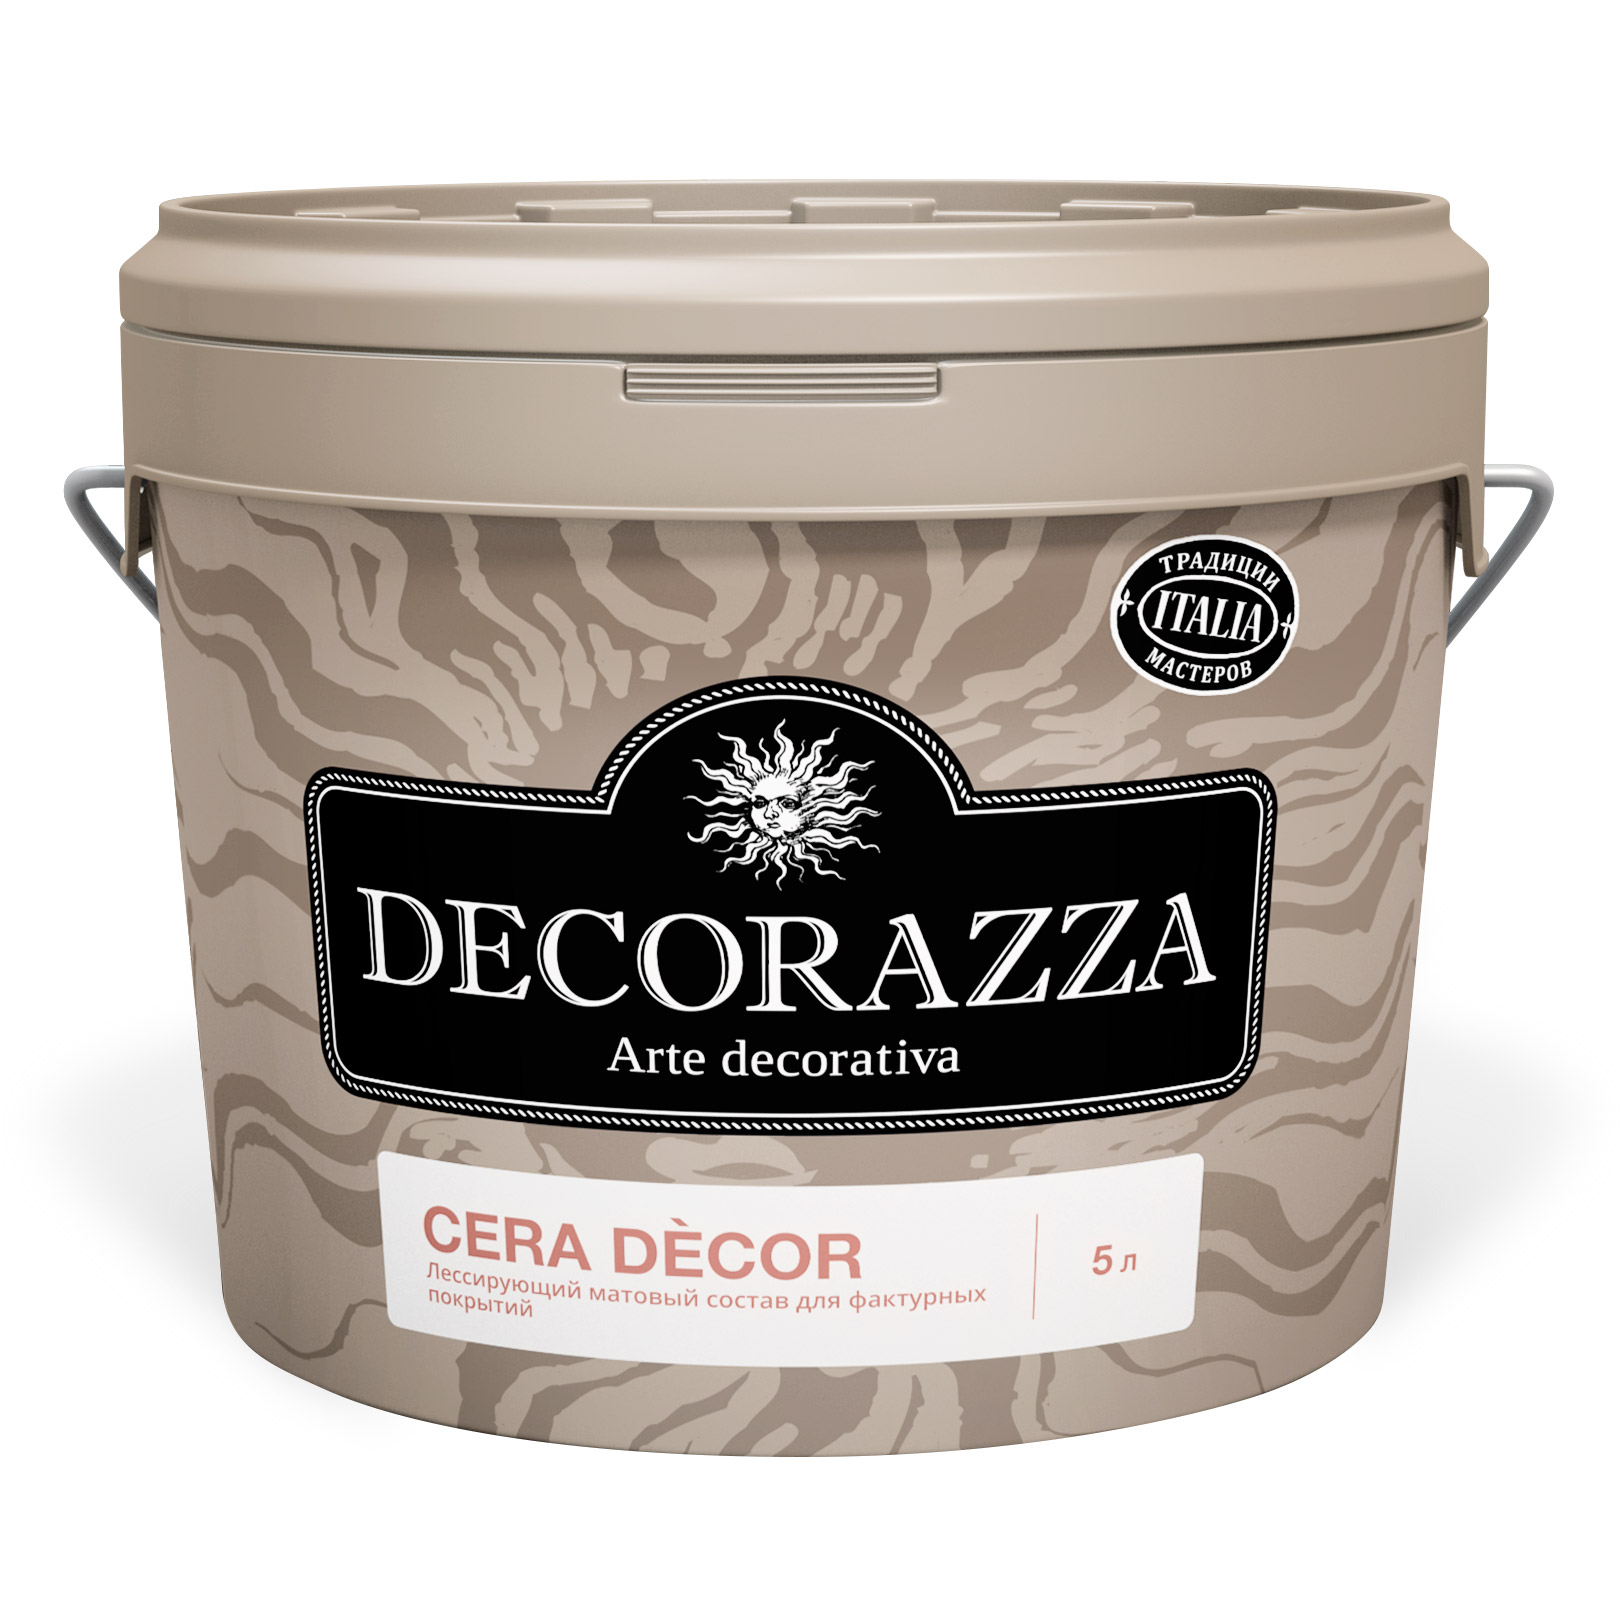 Воск для штукатурок Cera Decor Decorazza 2,5 кг воск защитный vincent decor cera realta для известковых декоративных покрытий 1 л